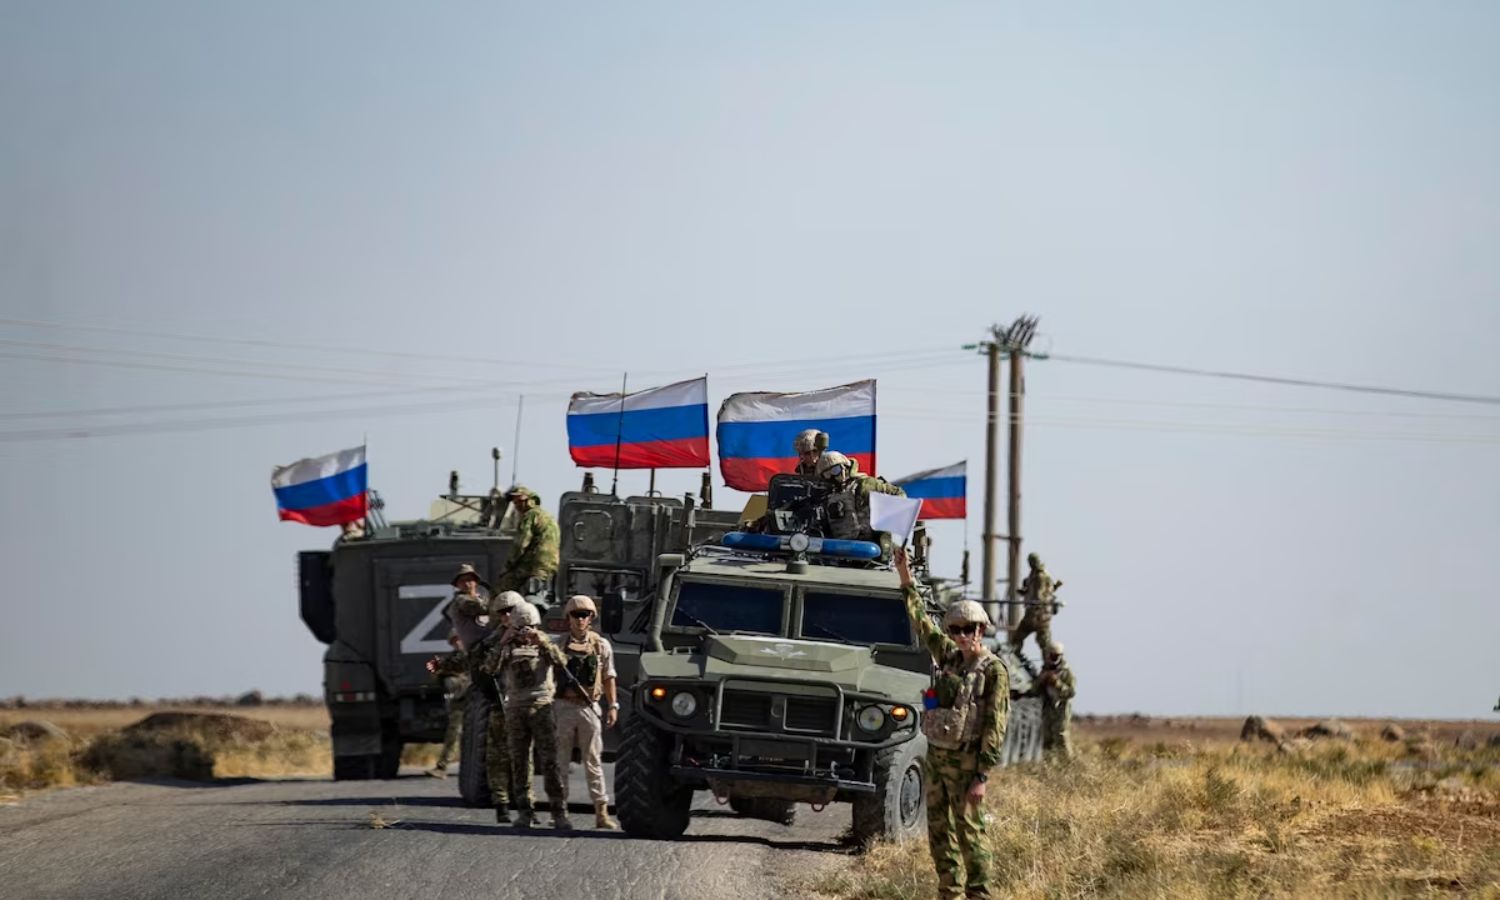 جنود من قافلة عسكرية روسية في دورية على طريق بالقرب من حقل نفط بالقرب من بلدة القحطانية في محافظة الحسكة شمال شرقي سوريا - تشرين الأول 2022(AFP)